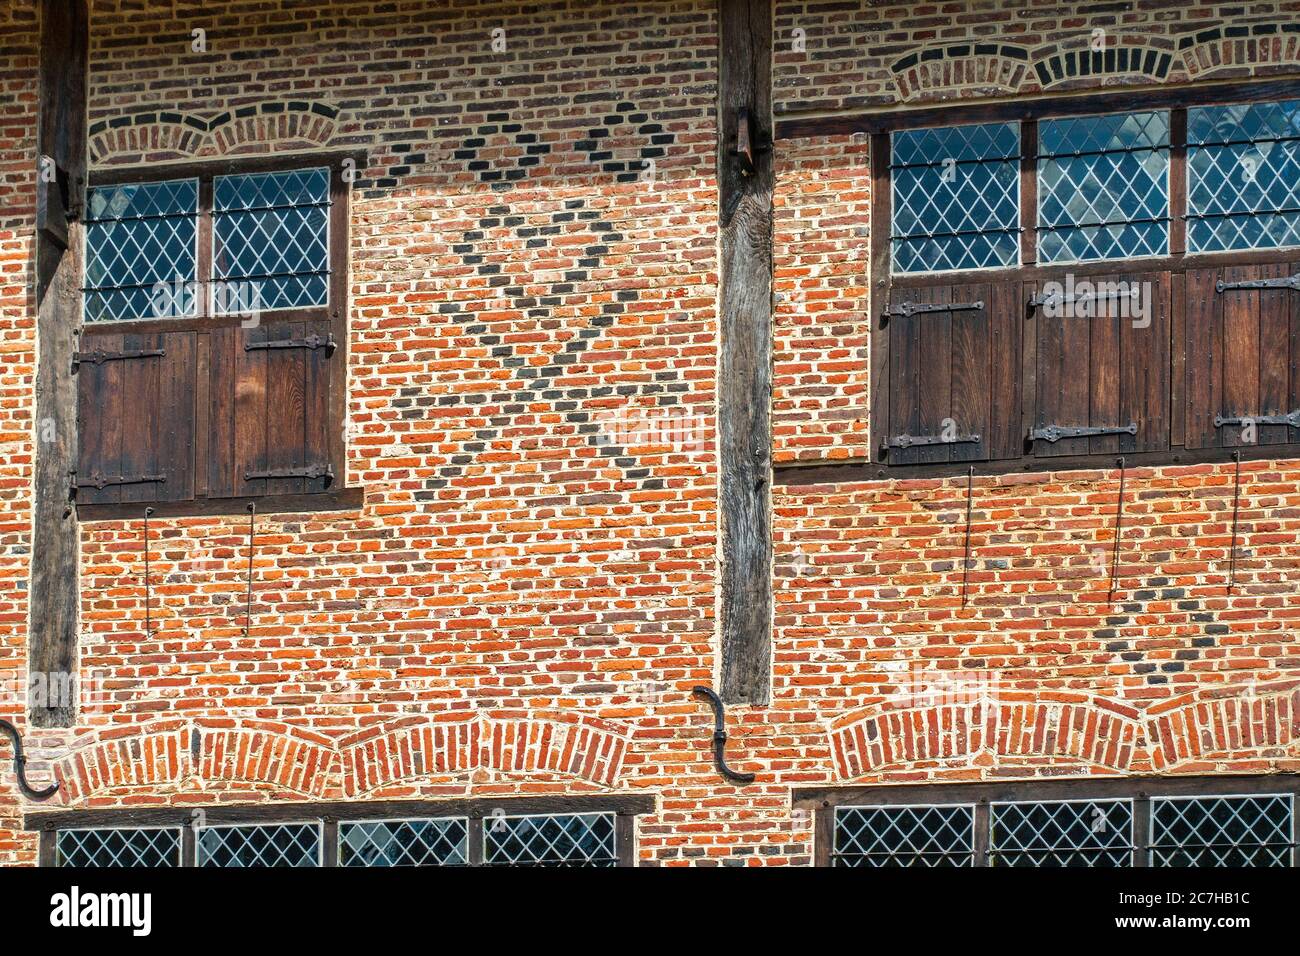 Symboles du maçon flamand en briques sur la façade de la maison en briques du XVIe siècle montrant des checks, des coeurs et des croix de Saint-André, Flandre, Belgique Banque D'Images